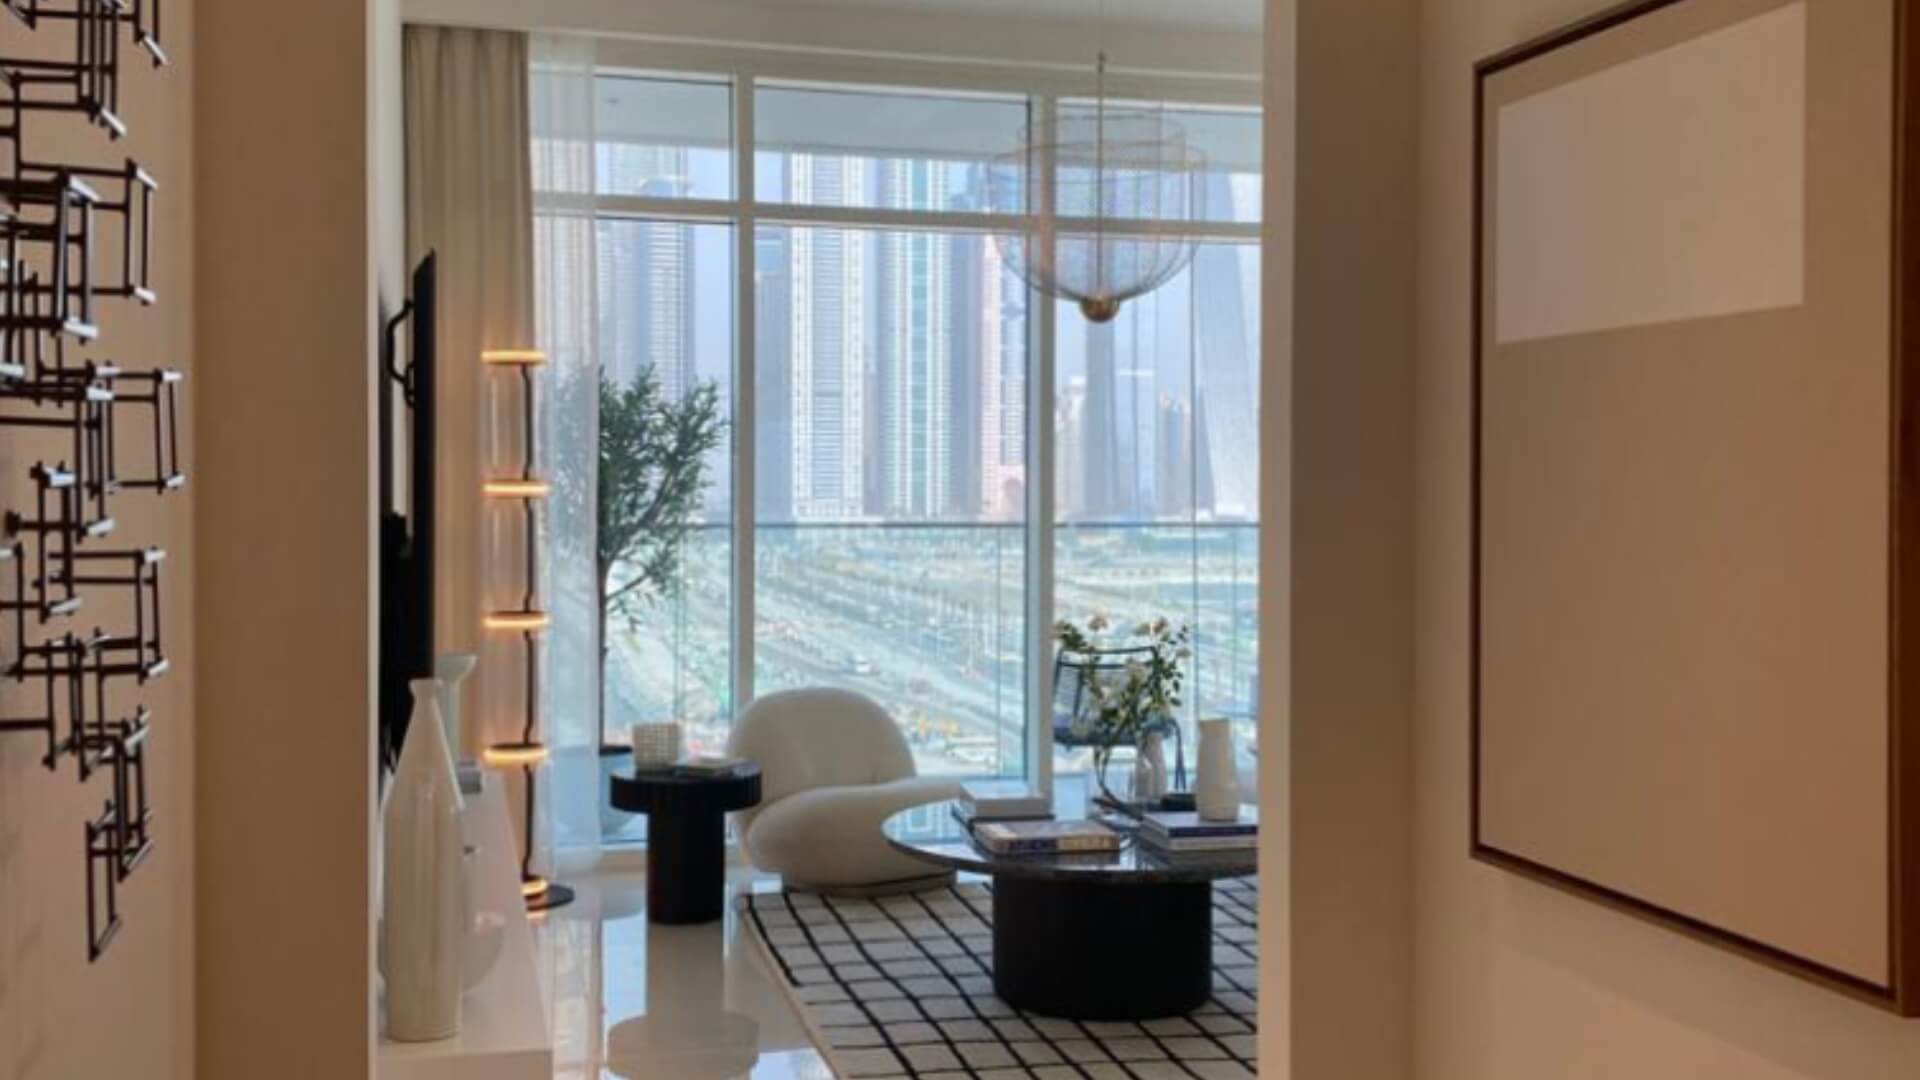 SUNRISE BAY by Emaar Properties in Emaar beachfront, Dubai, UAE5